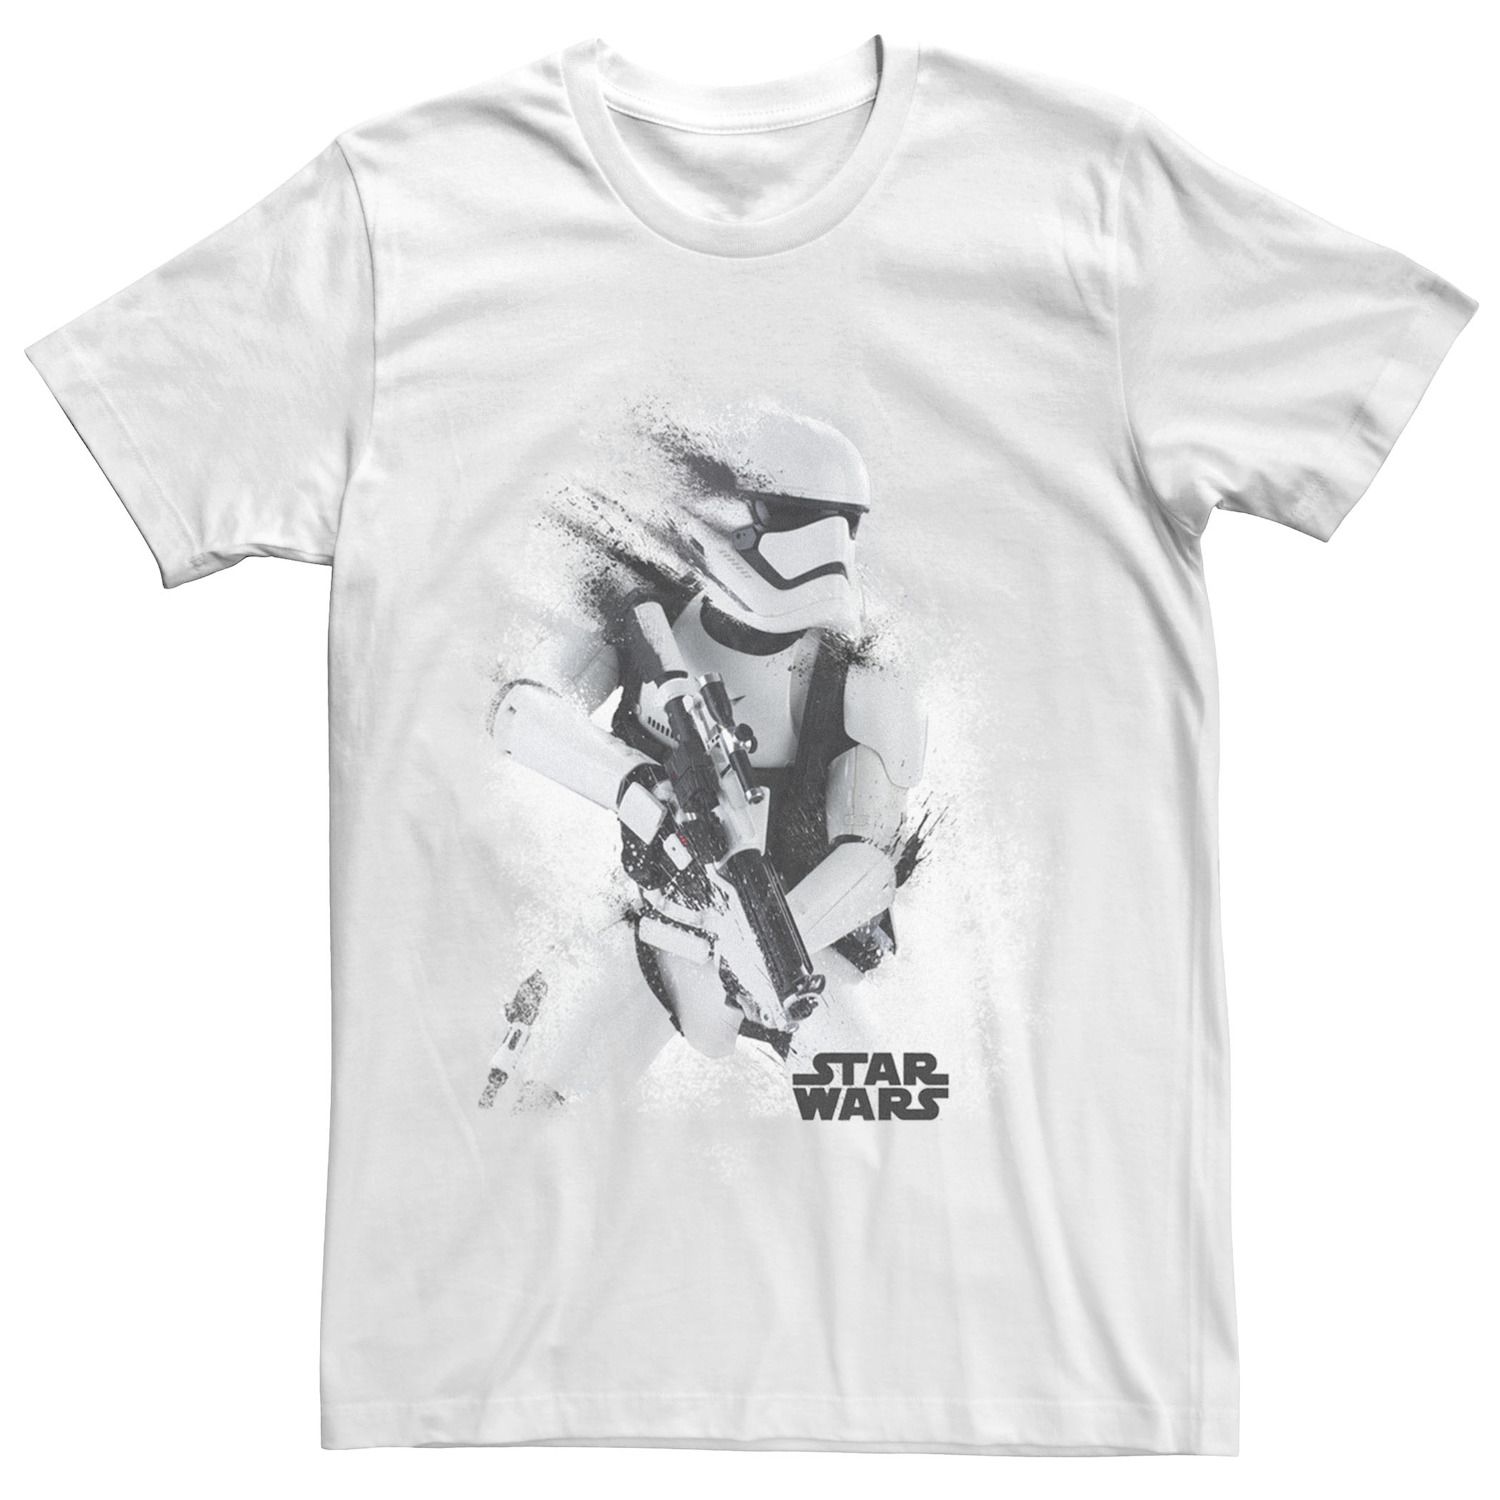 Мужская футболка The Force Awakens Splatter Stormtrooper Star Wars foster alan dean star wars the force awakens